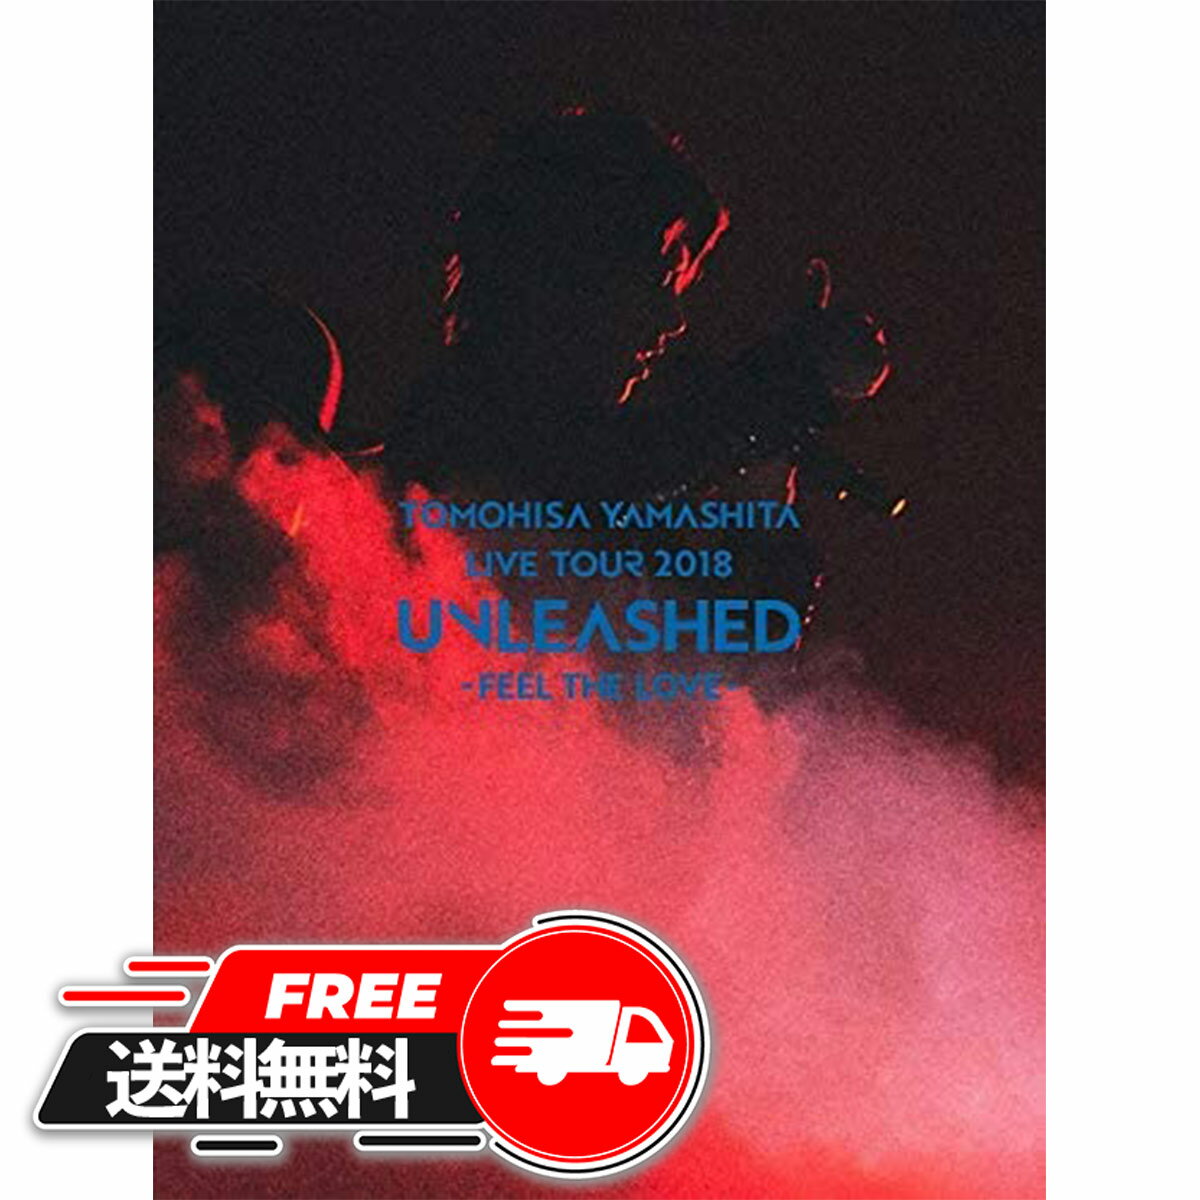 【 父の日 ギフト 】 TOMOHISA YAMASHITA LIVE TOUR 2018 UNLEASHED -FEEL THE LOVE-（初回生産限定盤）/Blu-ray Disc/SEXL-134 (オリジナルA4クリアファイル付) [Blu-ray] 山下 智久 山P